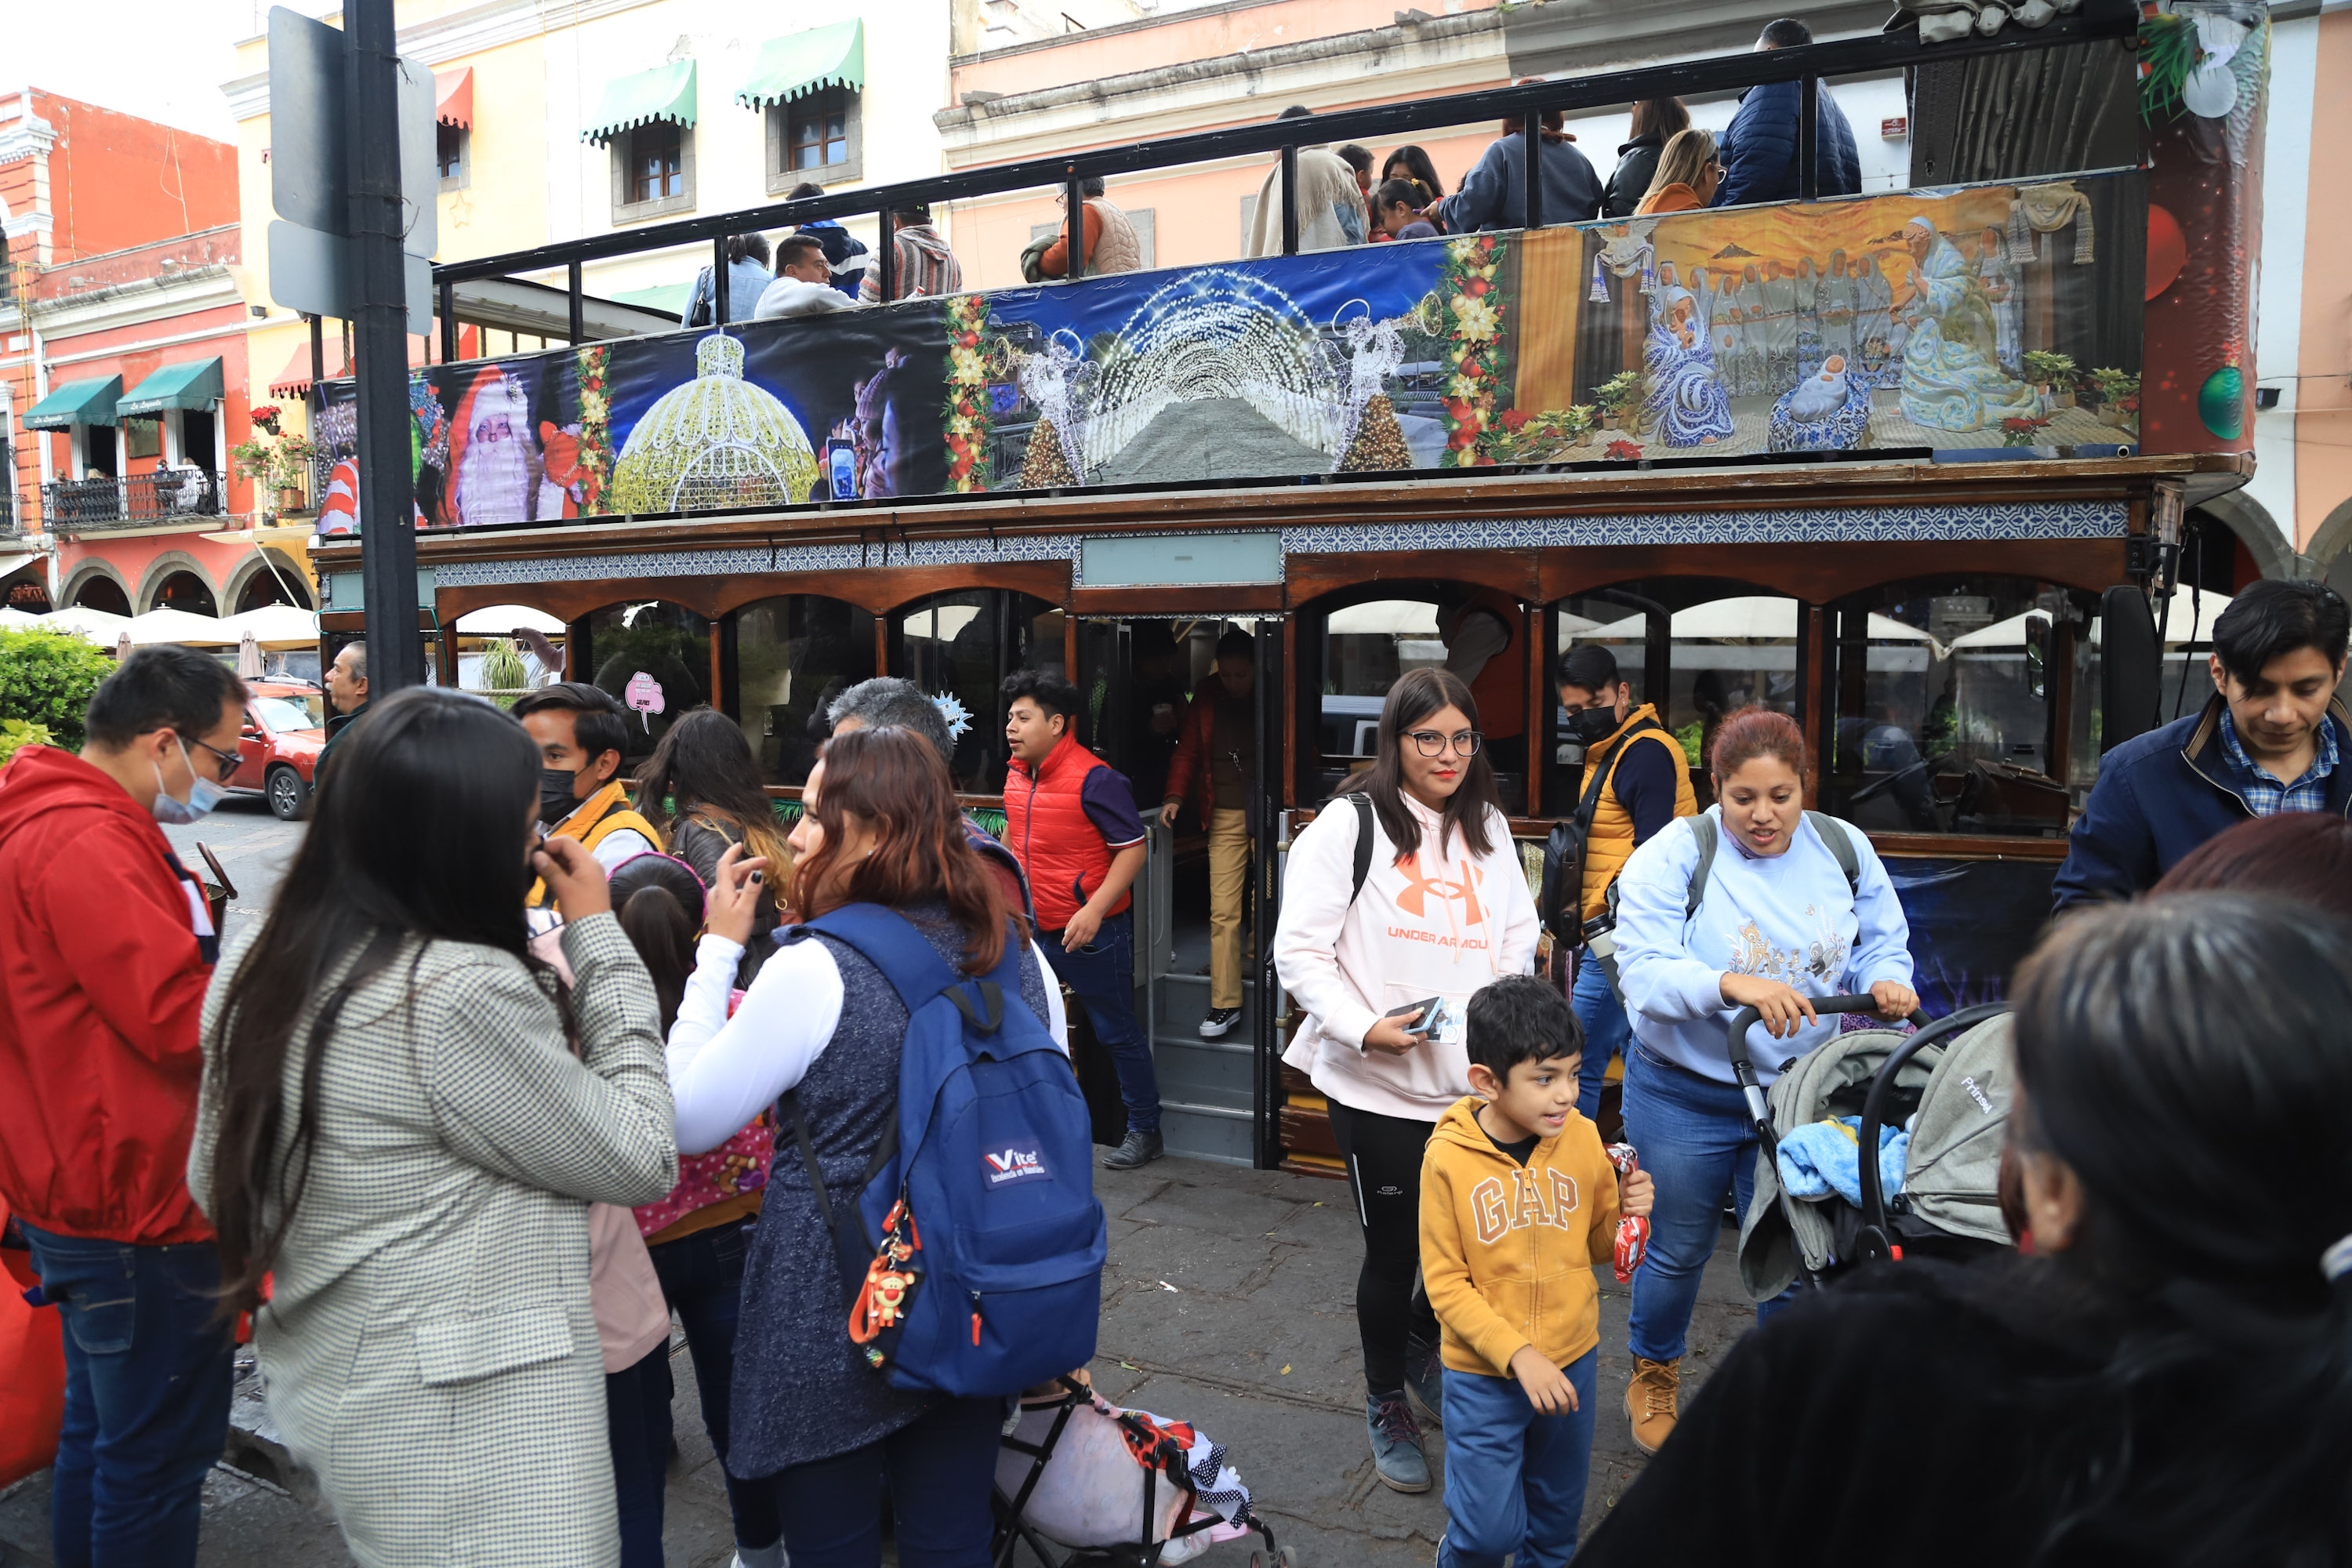 En marcha recorridos gratis en Turibus por el Centro Histórico de Puebla